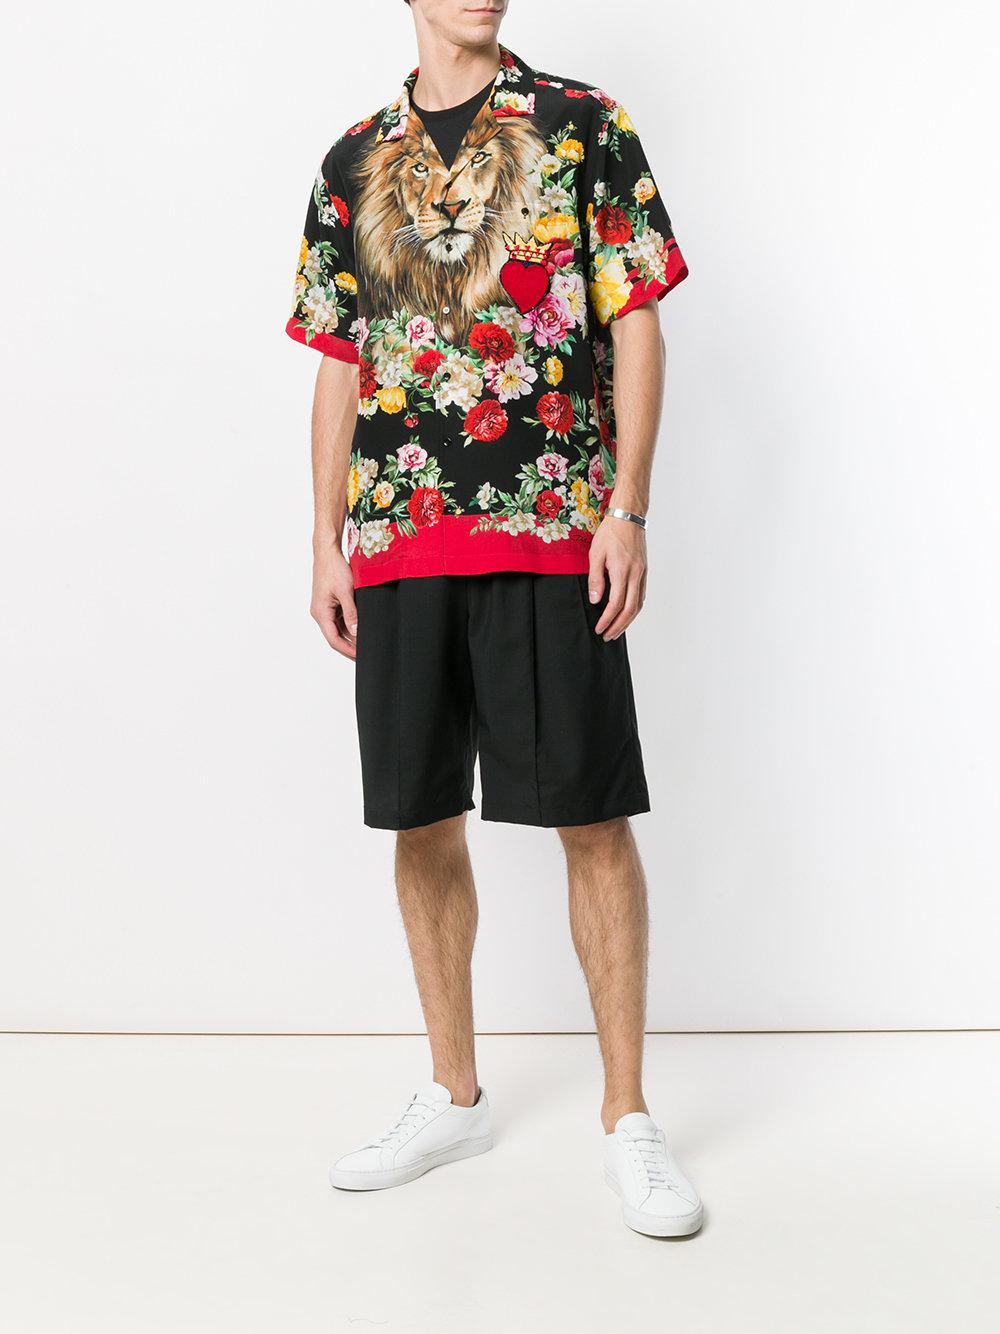 Dolce & Gabbana Cotton Floral Lion Print Shirt for Men - Lyst